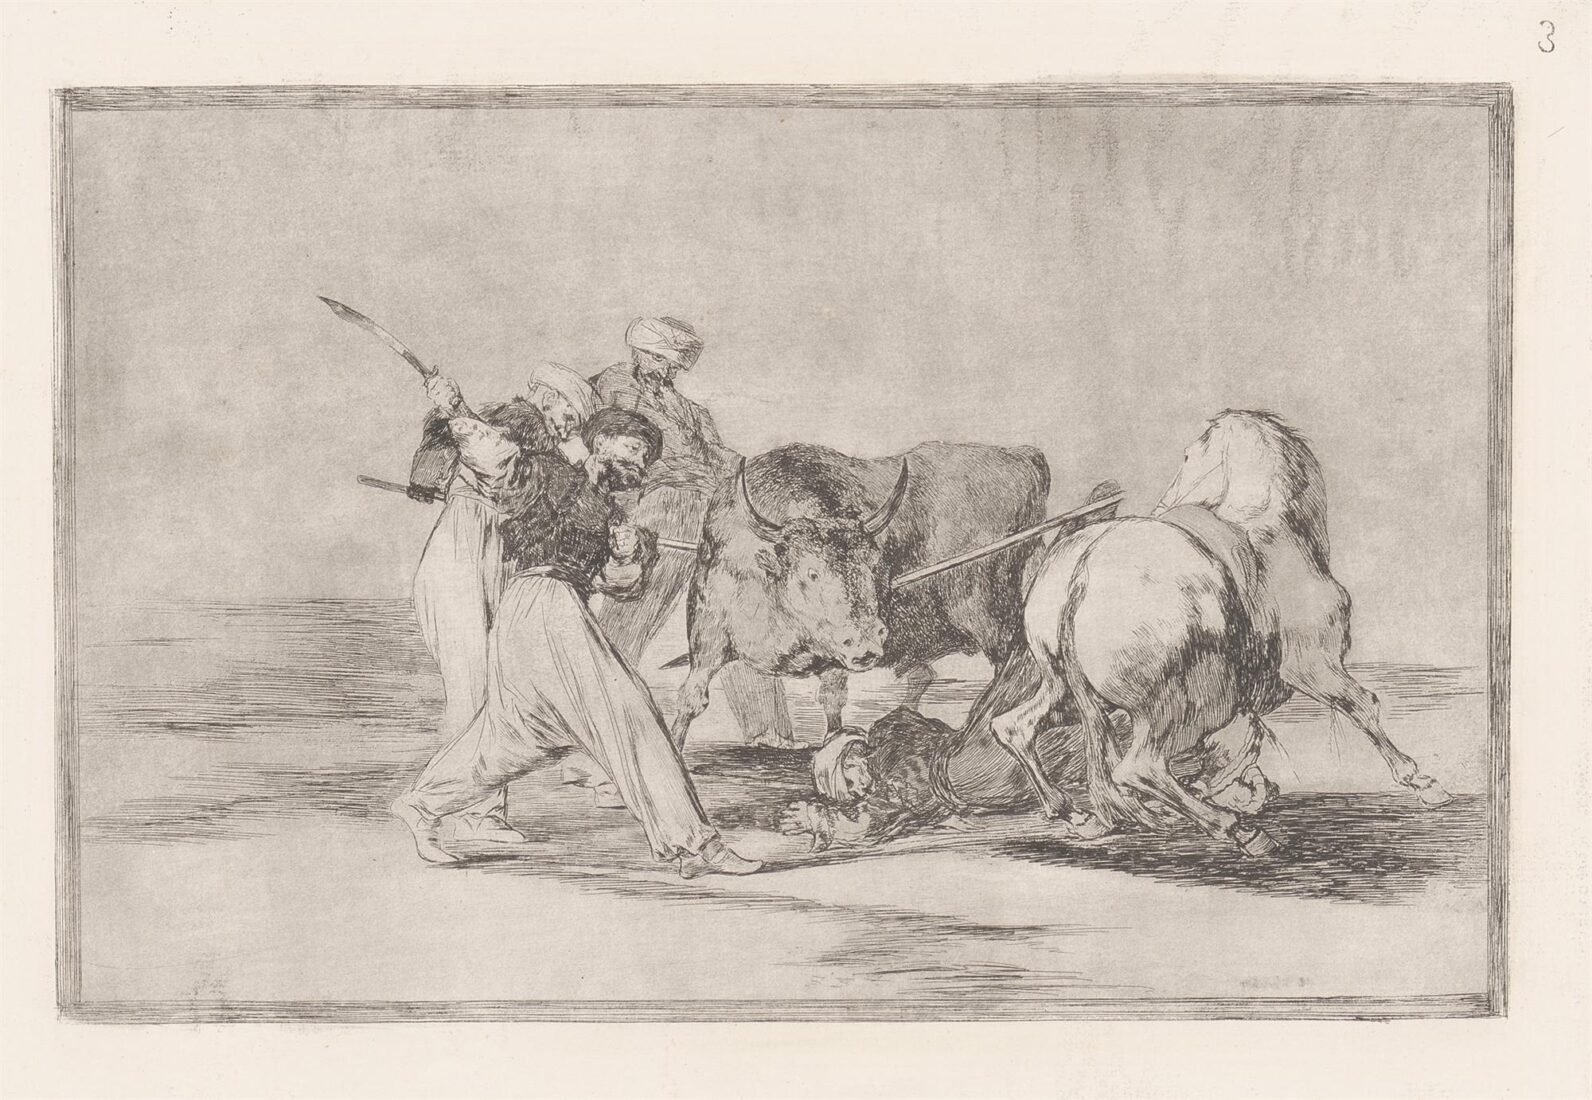 Οι Μαυριτανοί που εγκαταστάθηκαν στην Ισπανία, εγκαταλείποντας τις προλήψεις του Κορανίου τους, υιοθέτησαν αυτόν τον τρόπο κυνηγιού και σκοτώνουν με ακόντια έναν ταύρο στους κάμπους - Goya y Lucientes Francisco